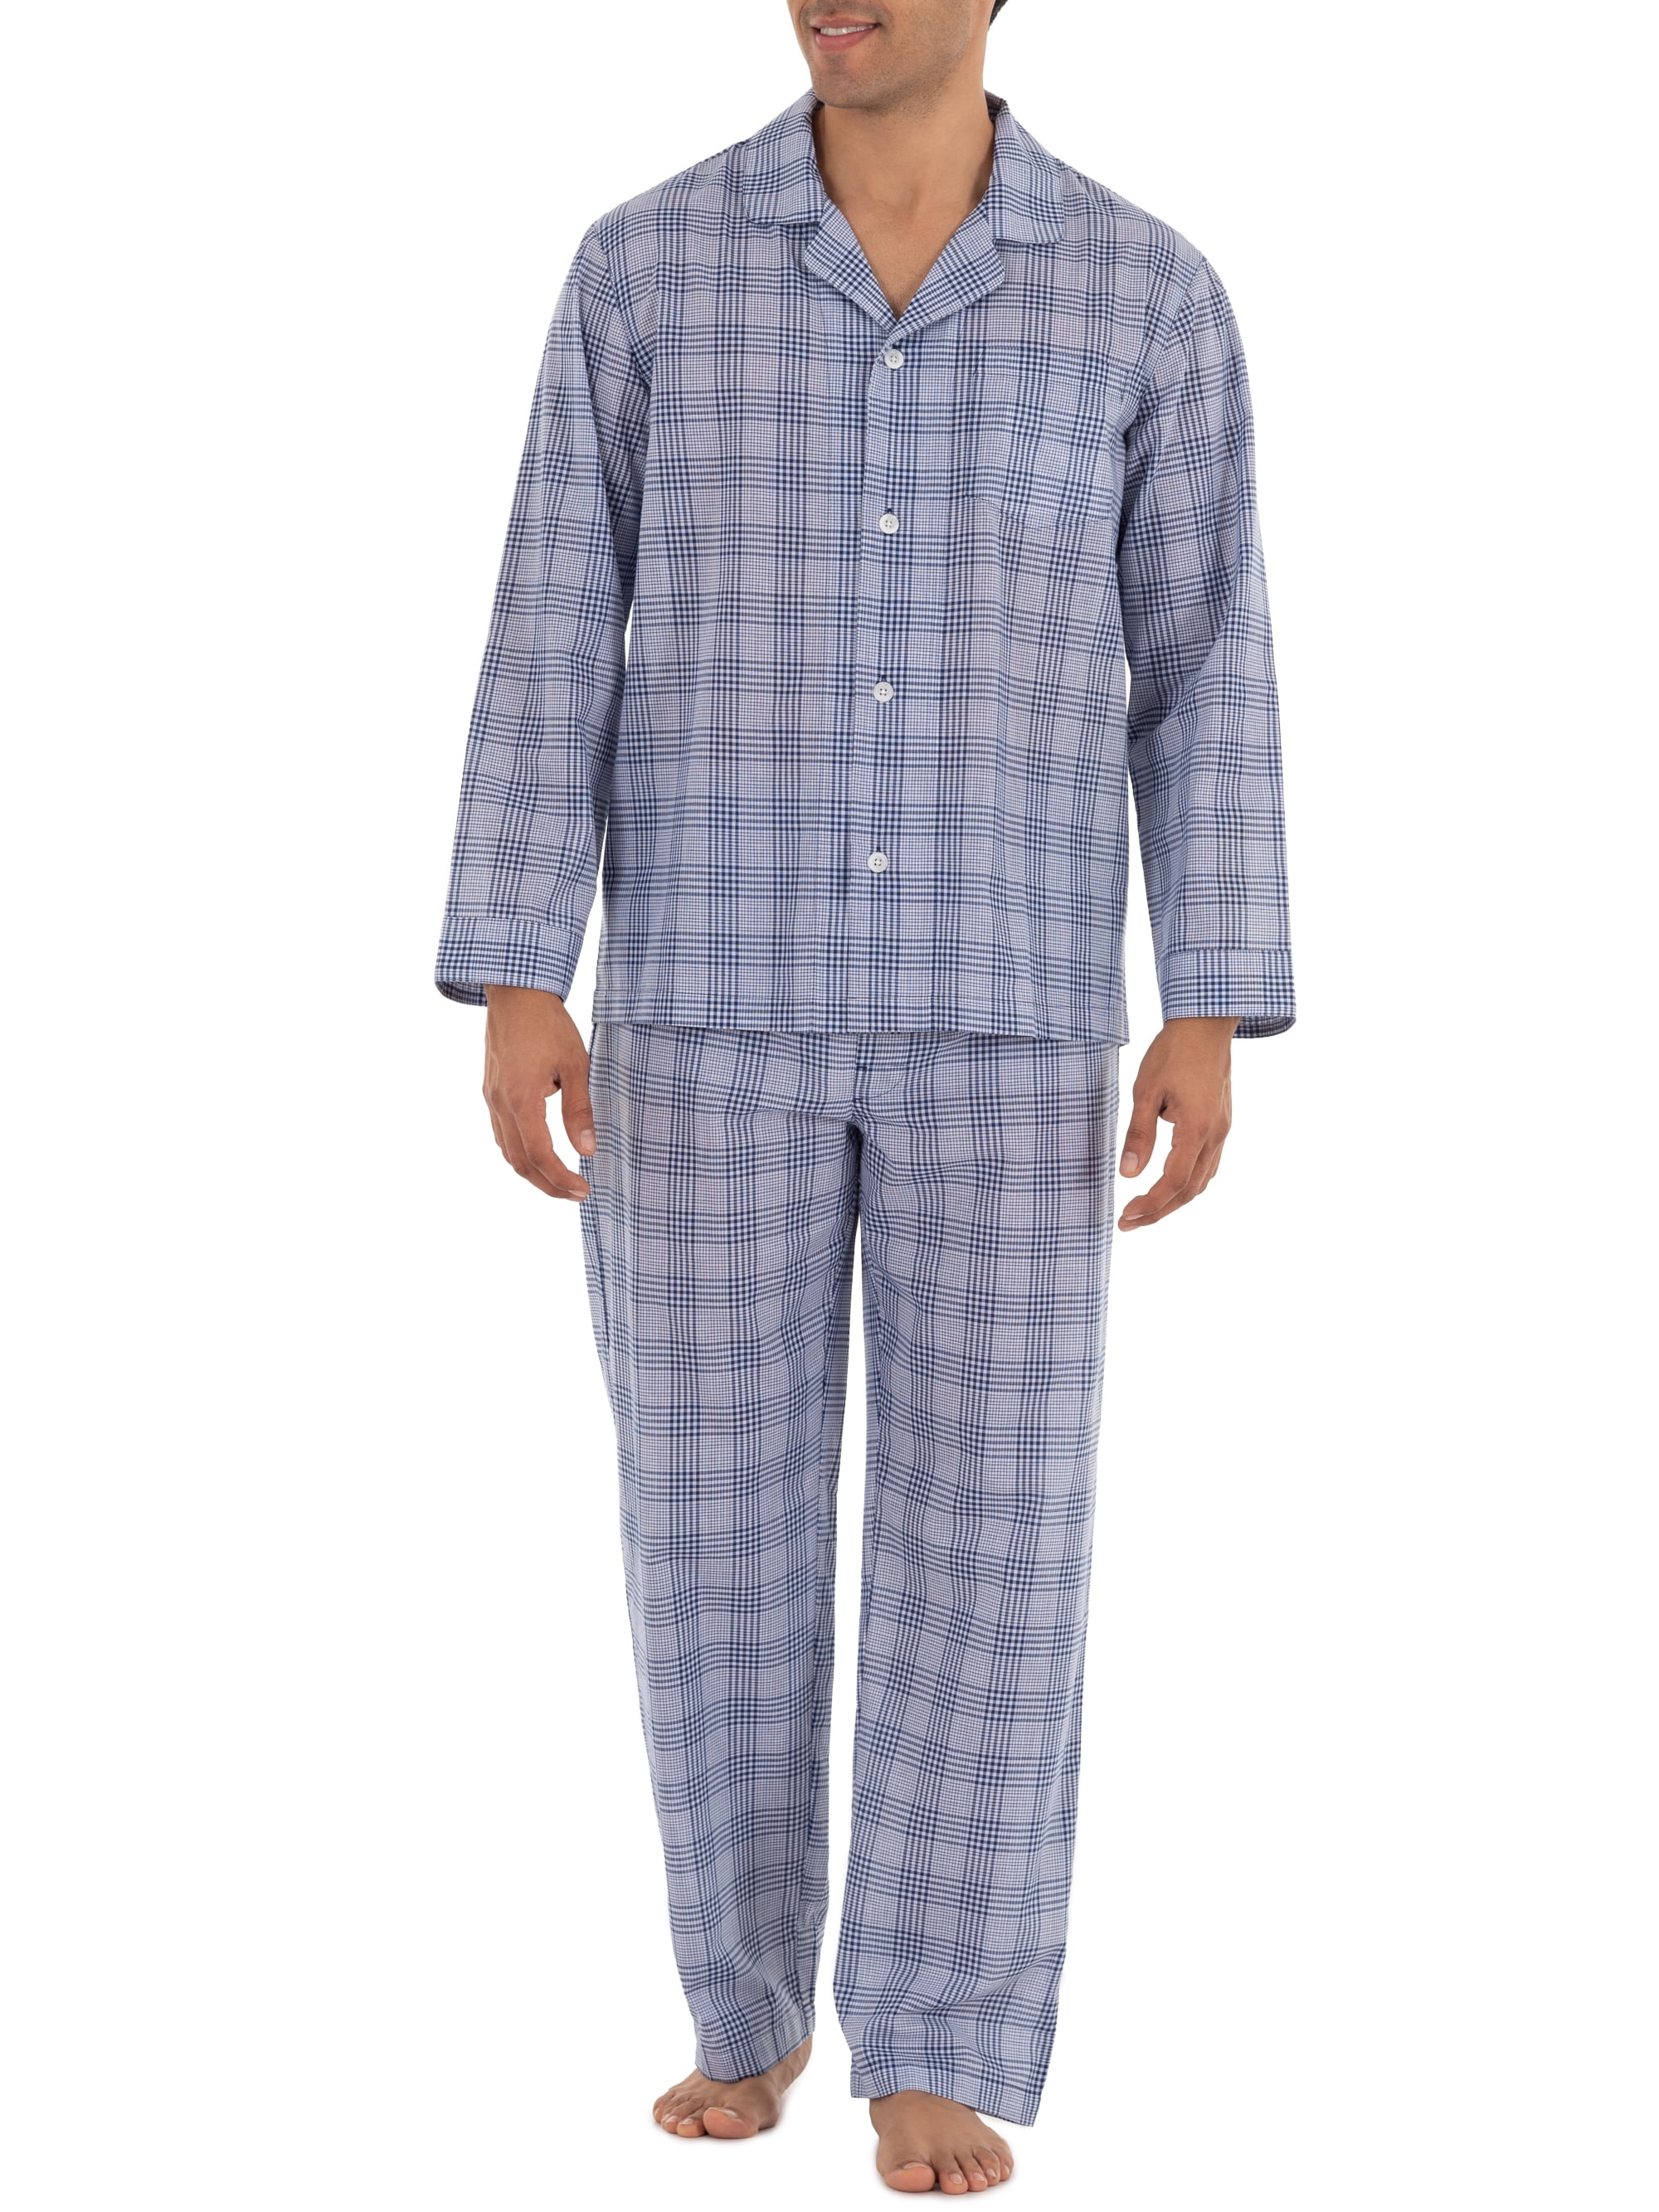 Lavenderi Mens Long Sleeve Silk Satin Pajama Set Medium,Champagne Silky Pajamas Sleepwear